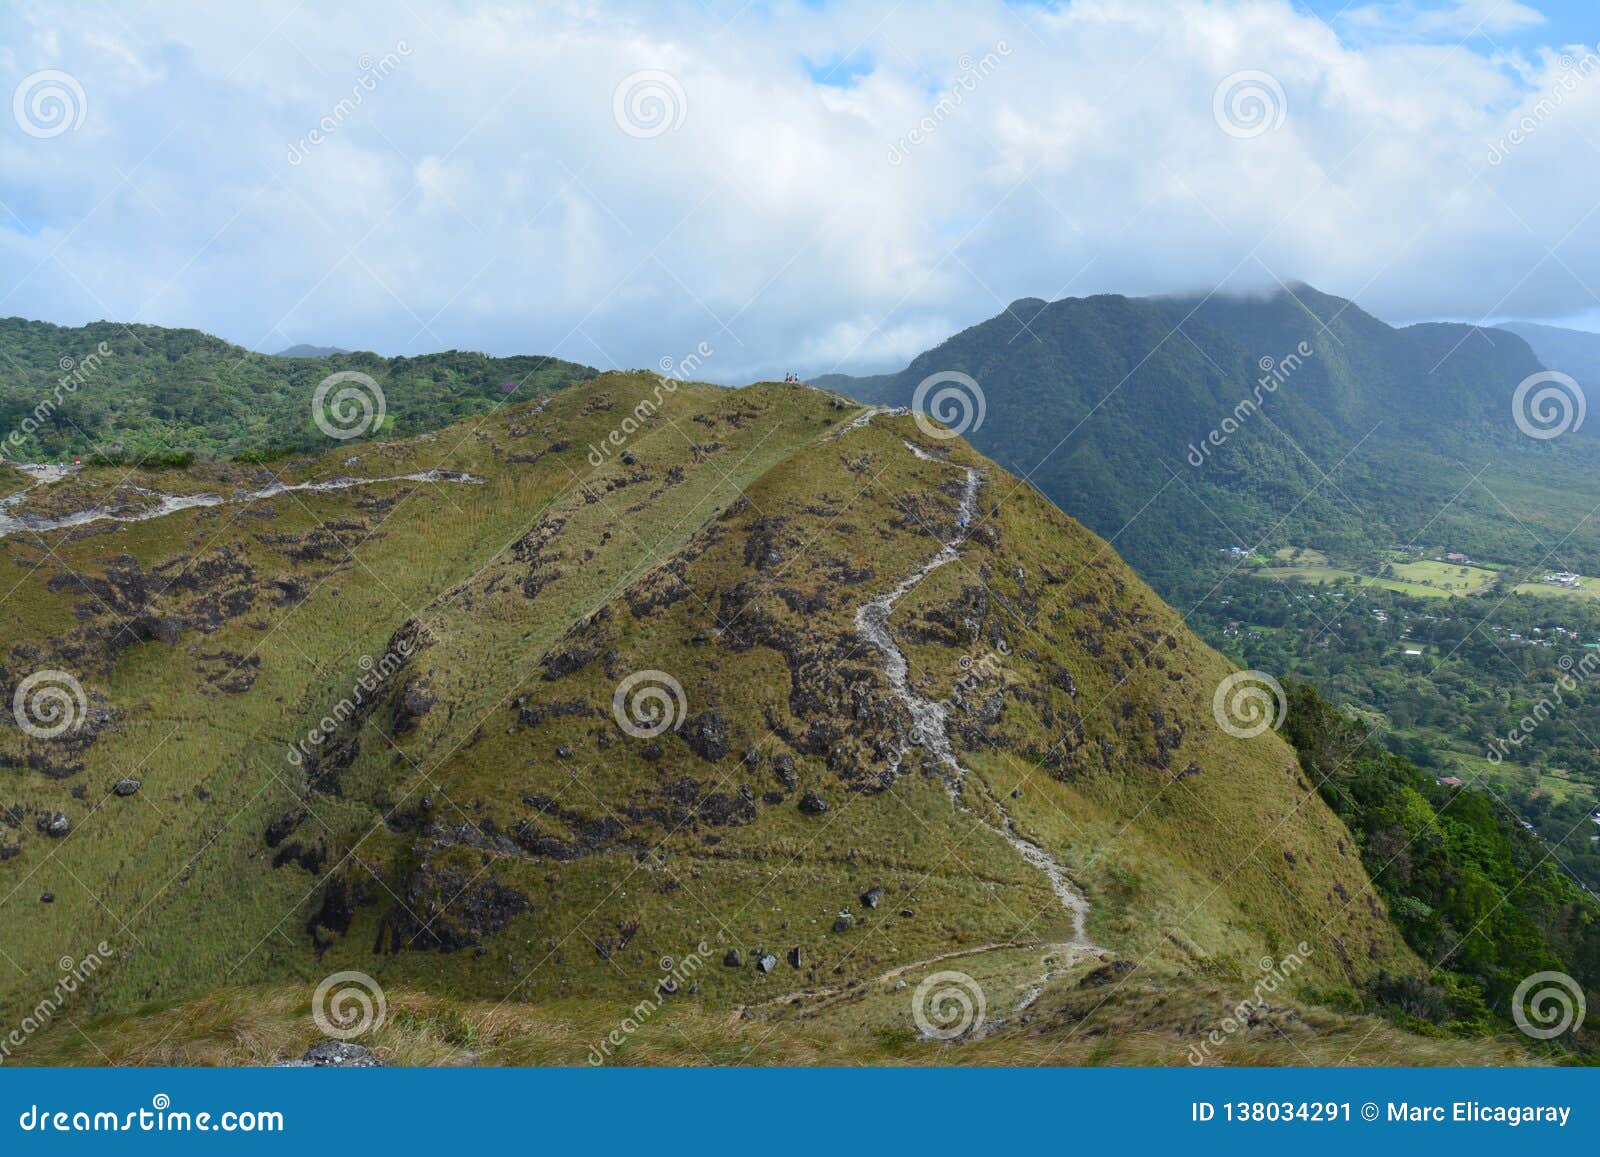 la india dormida mountain in el valle de anton panama